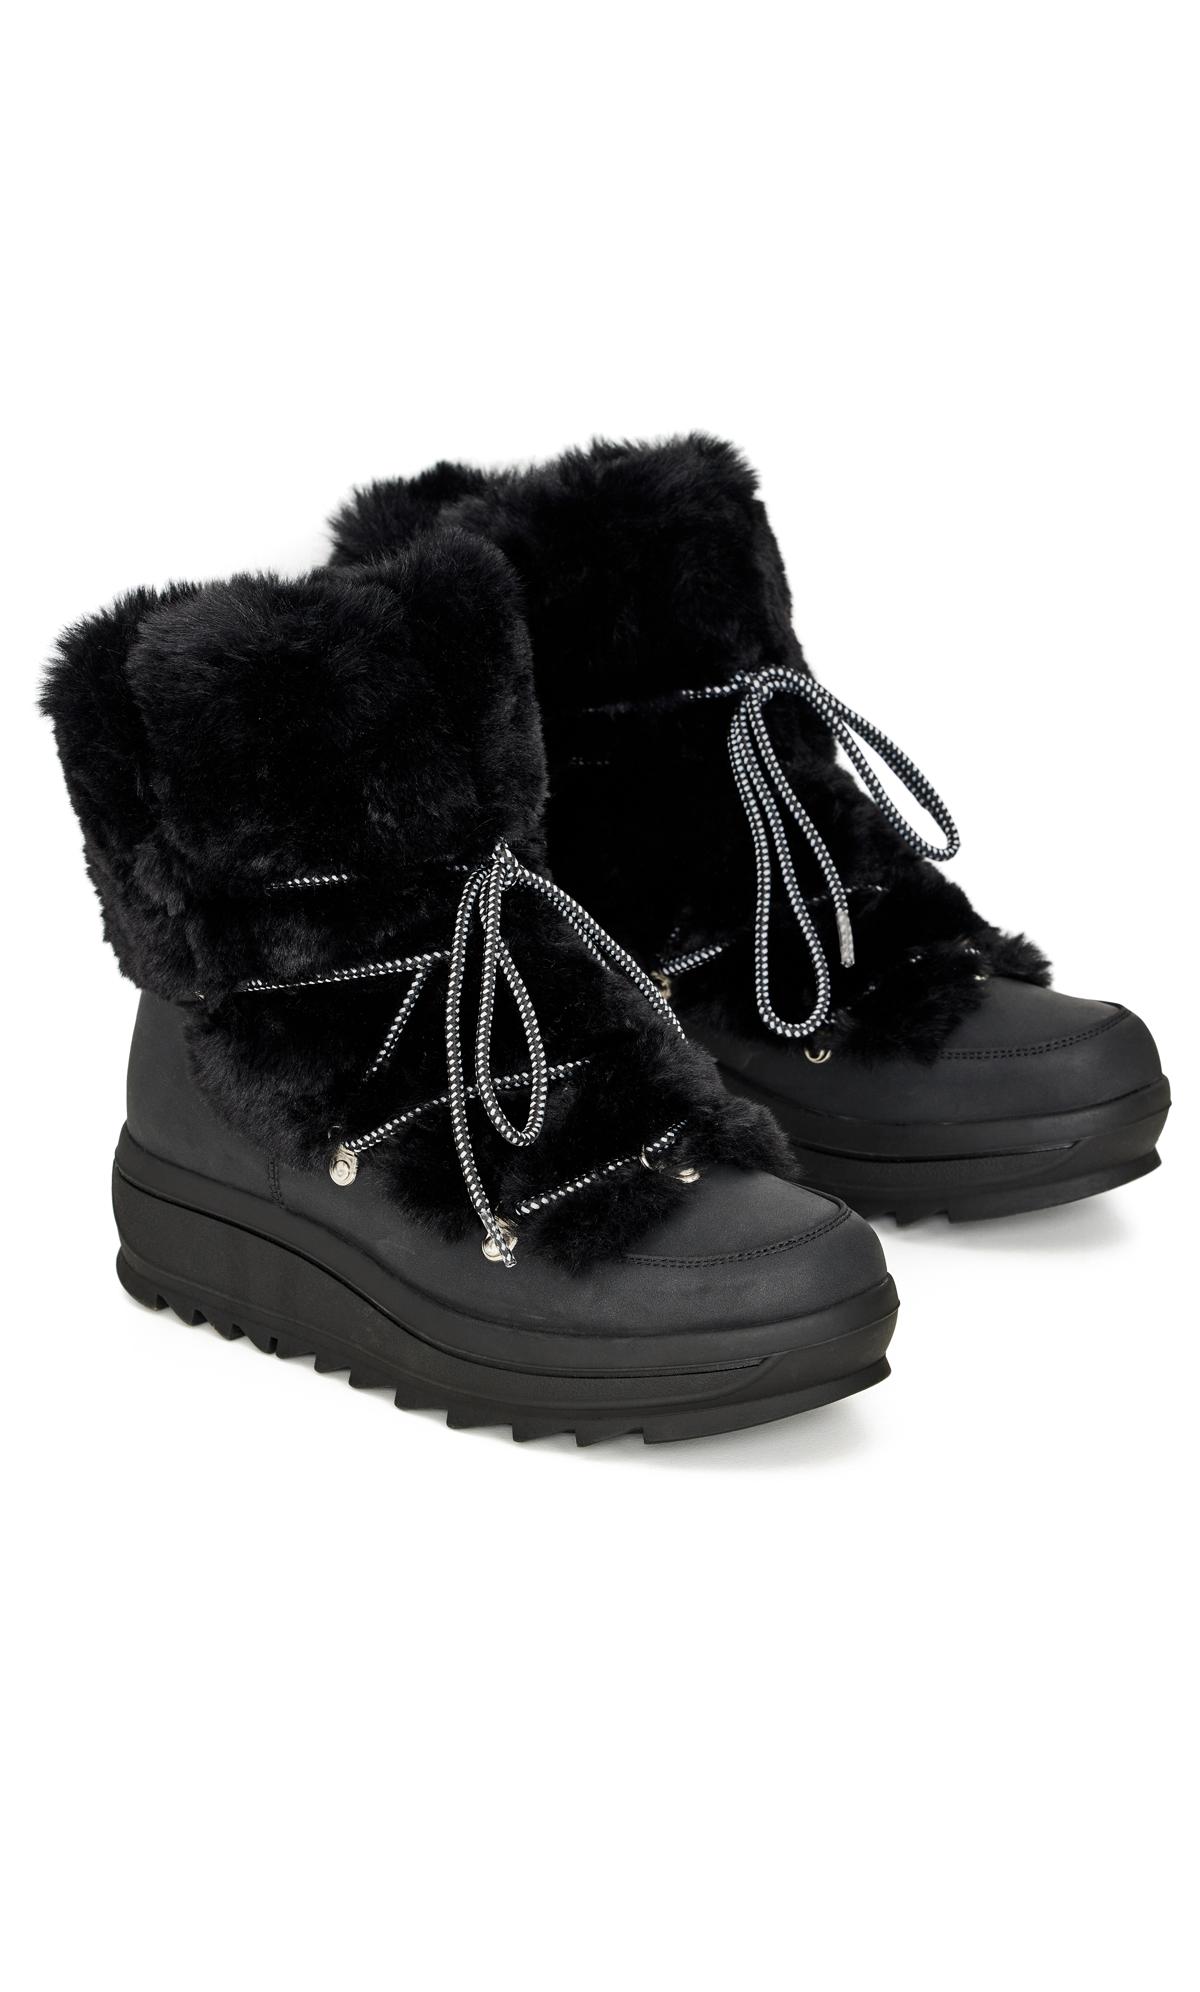 Aurora Black Wide Fit Winter Boot | Evans